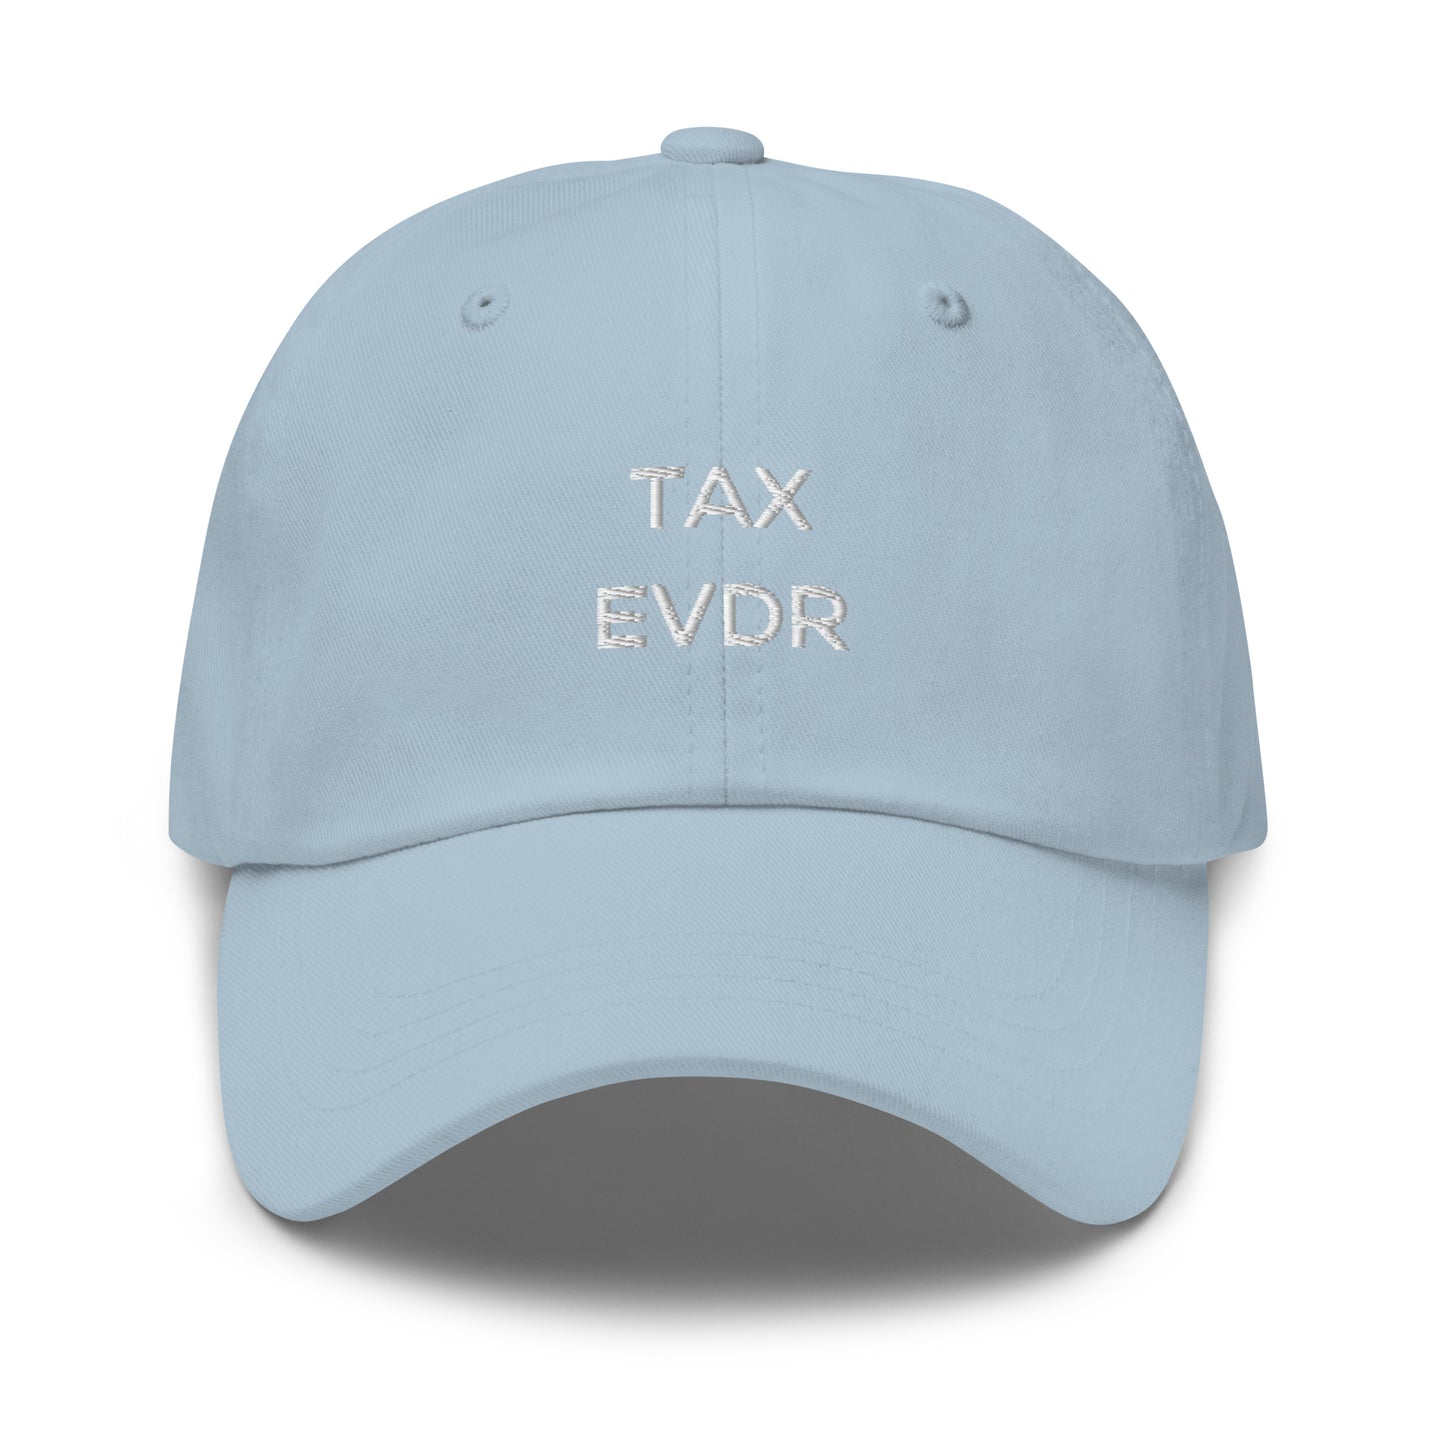 TAX EVDR Cap